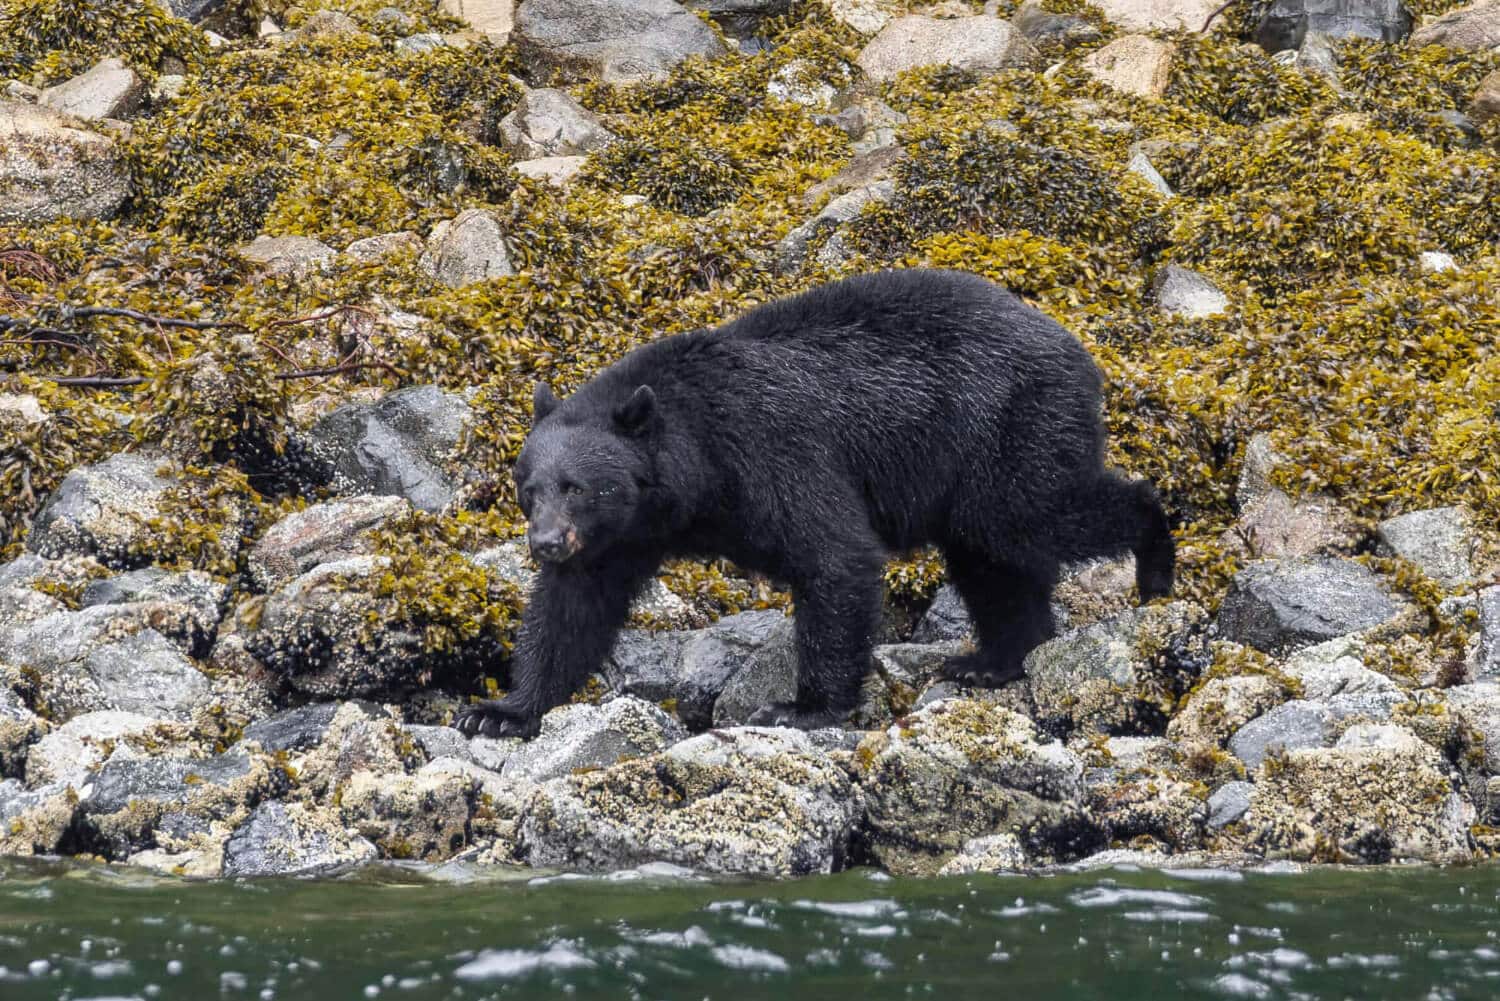 a black bear walking on rocks near water